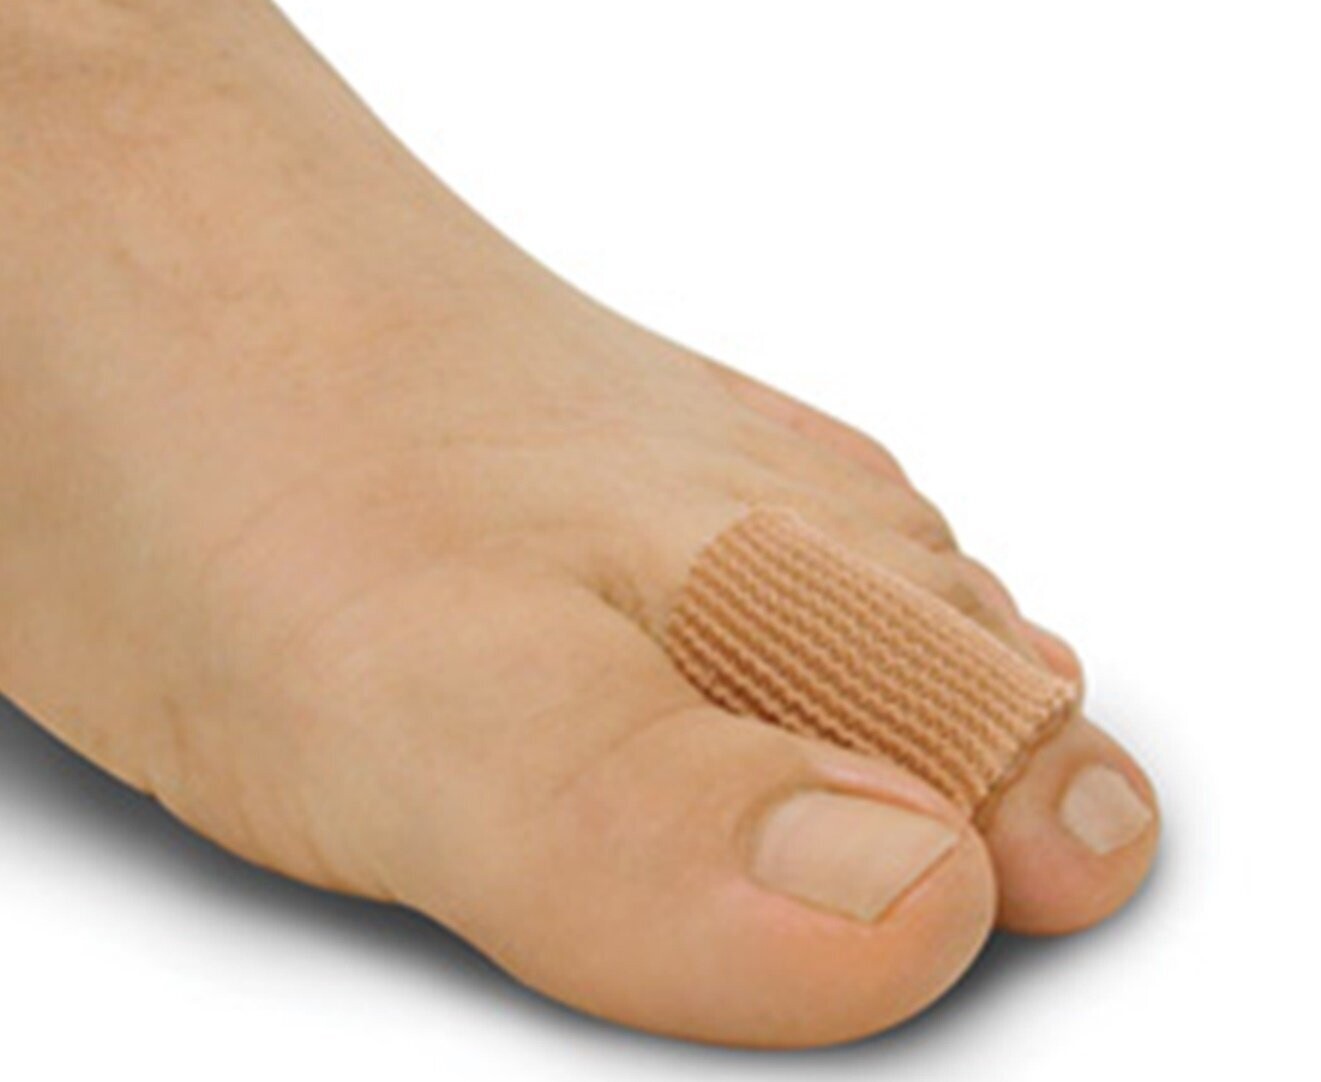 DIGI TUBE 1" Professional Foot Care MEDIUM